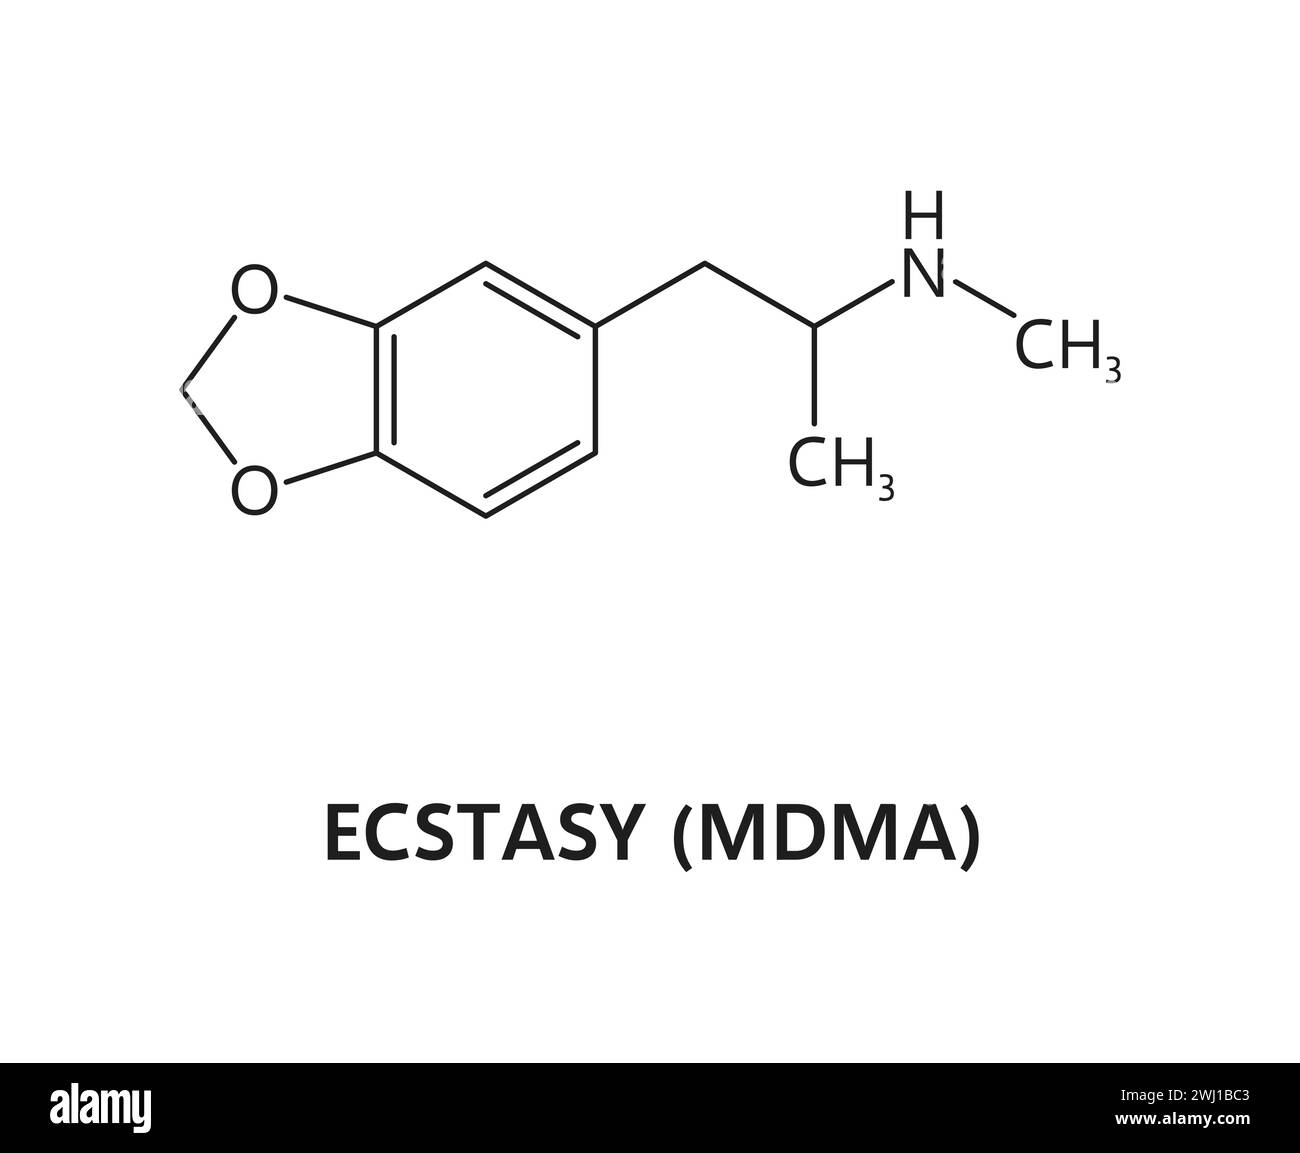 Structure de molécule de médicament organique, formule de MDMA d'ecstasy synthétique. Schéma de molécule de drogue synthétique, structure moléculaire narcotique MDMA ou formule ou schéma de vecteur chimique de substance illégale Illustration de Vecteur